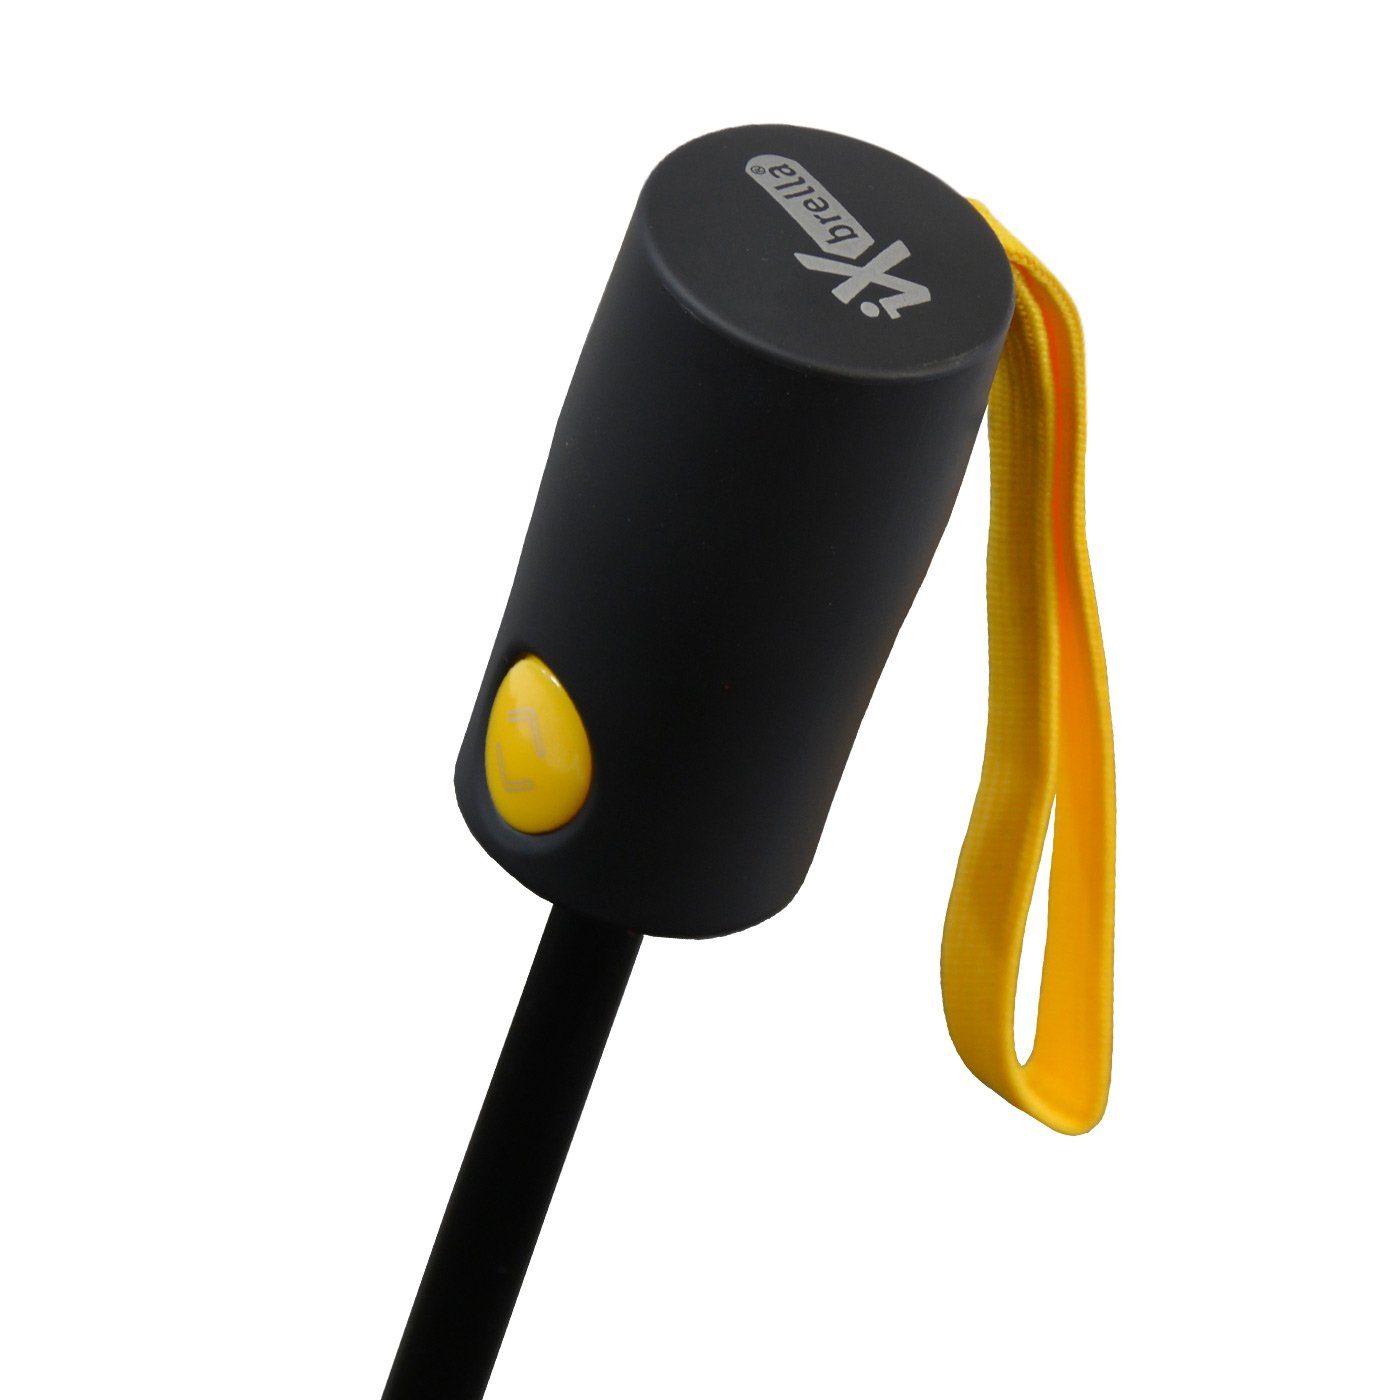 iX-brella Reverse stabilen Fiberglas-Automatiksch, bunten Taschenregenschirm öffnender mit Speichen gelb umgekehrt